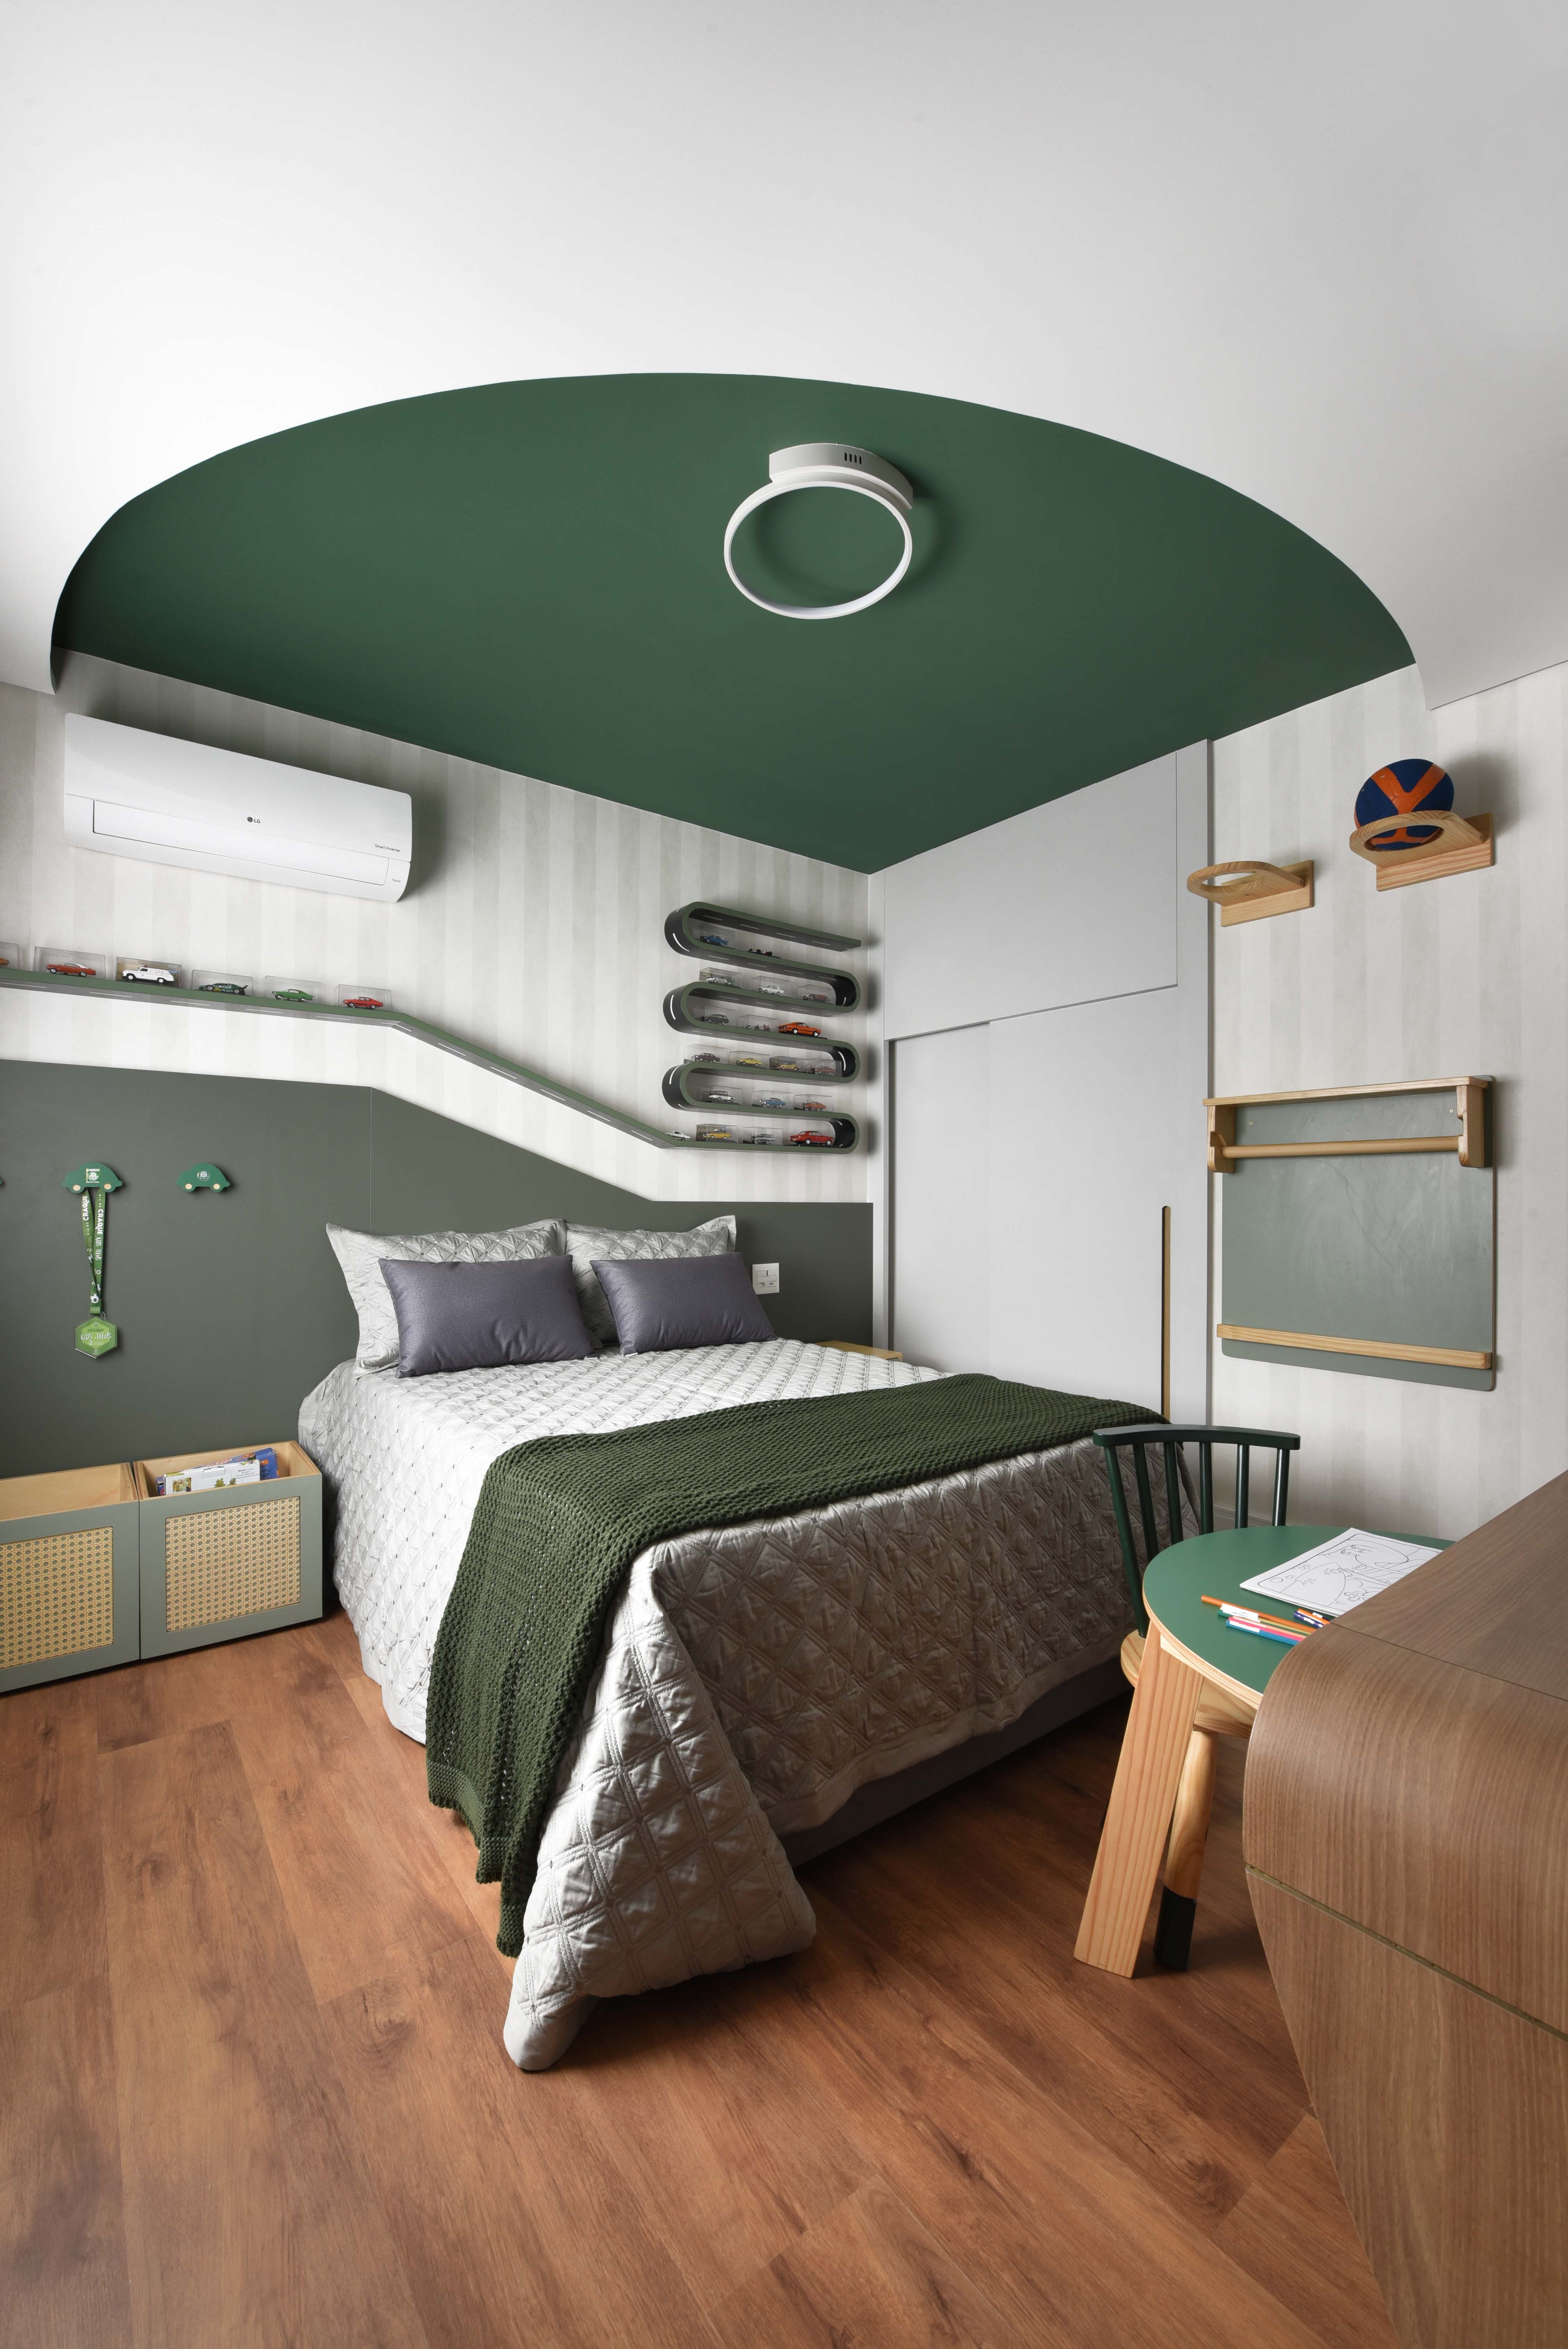 No quarto do menino, a arquiteta Rosangela Pena propôs uma decoração lúdica, sem abrir mão da funcionalidade que o ambiente precisa | Foto: Sidney Doll 